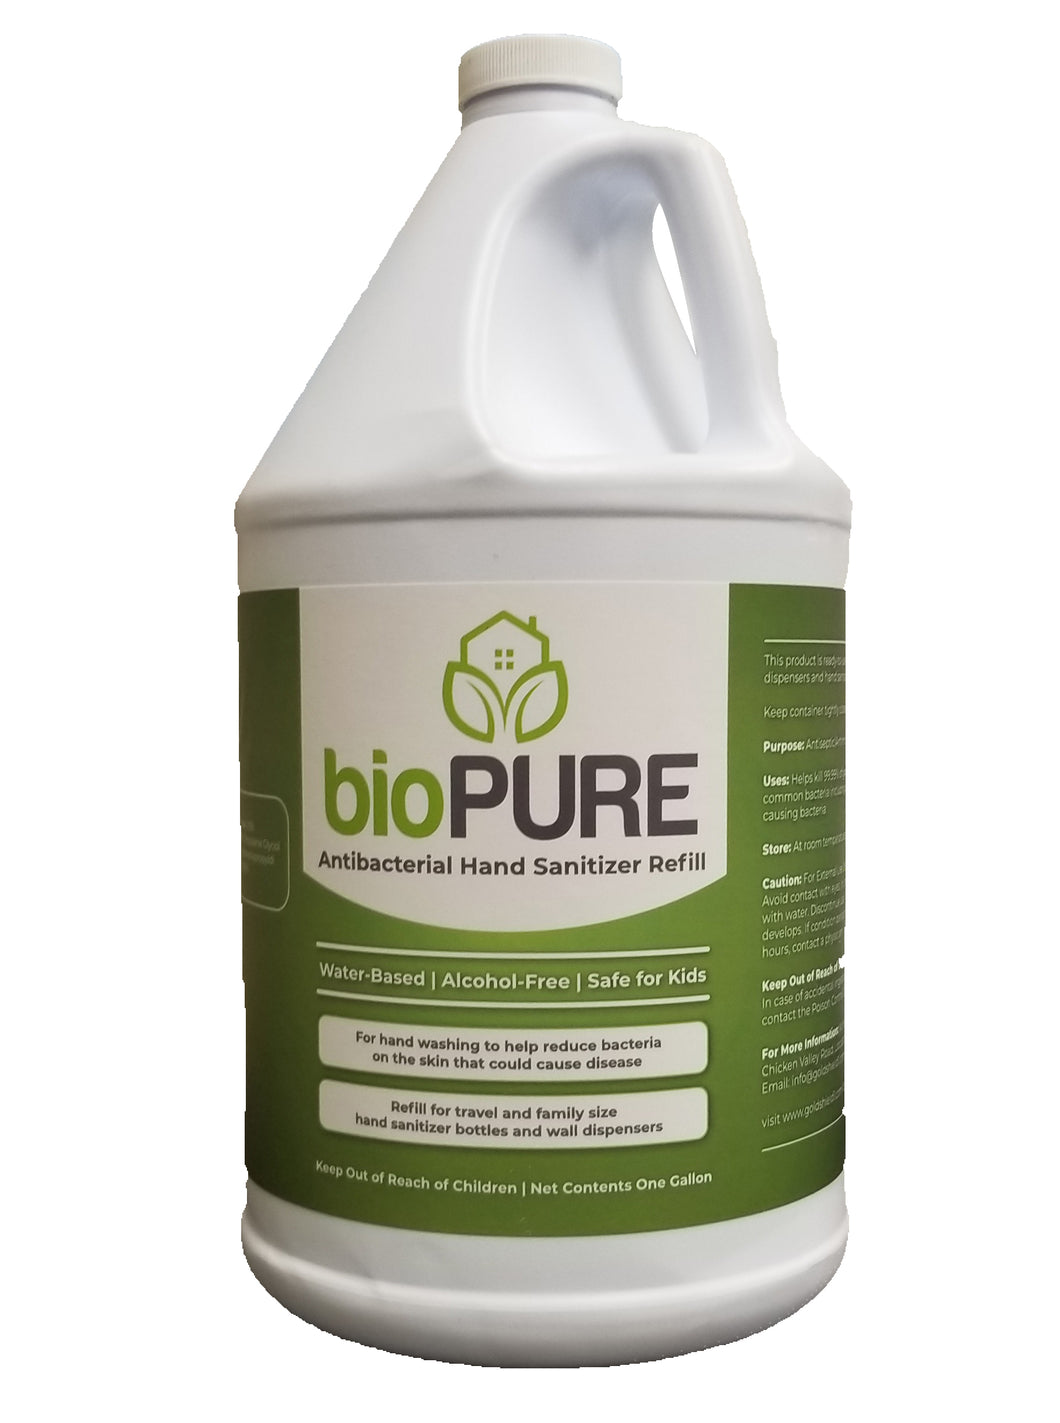 bioPURE Shield Foaming Hand Sanitizer - 1 Gallon Refill provides 9,000 pumps